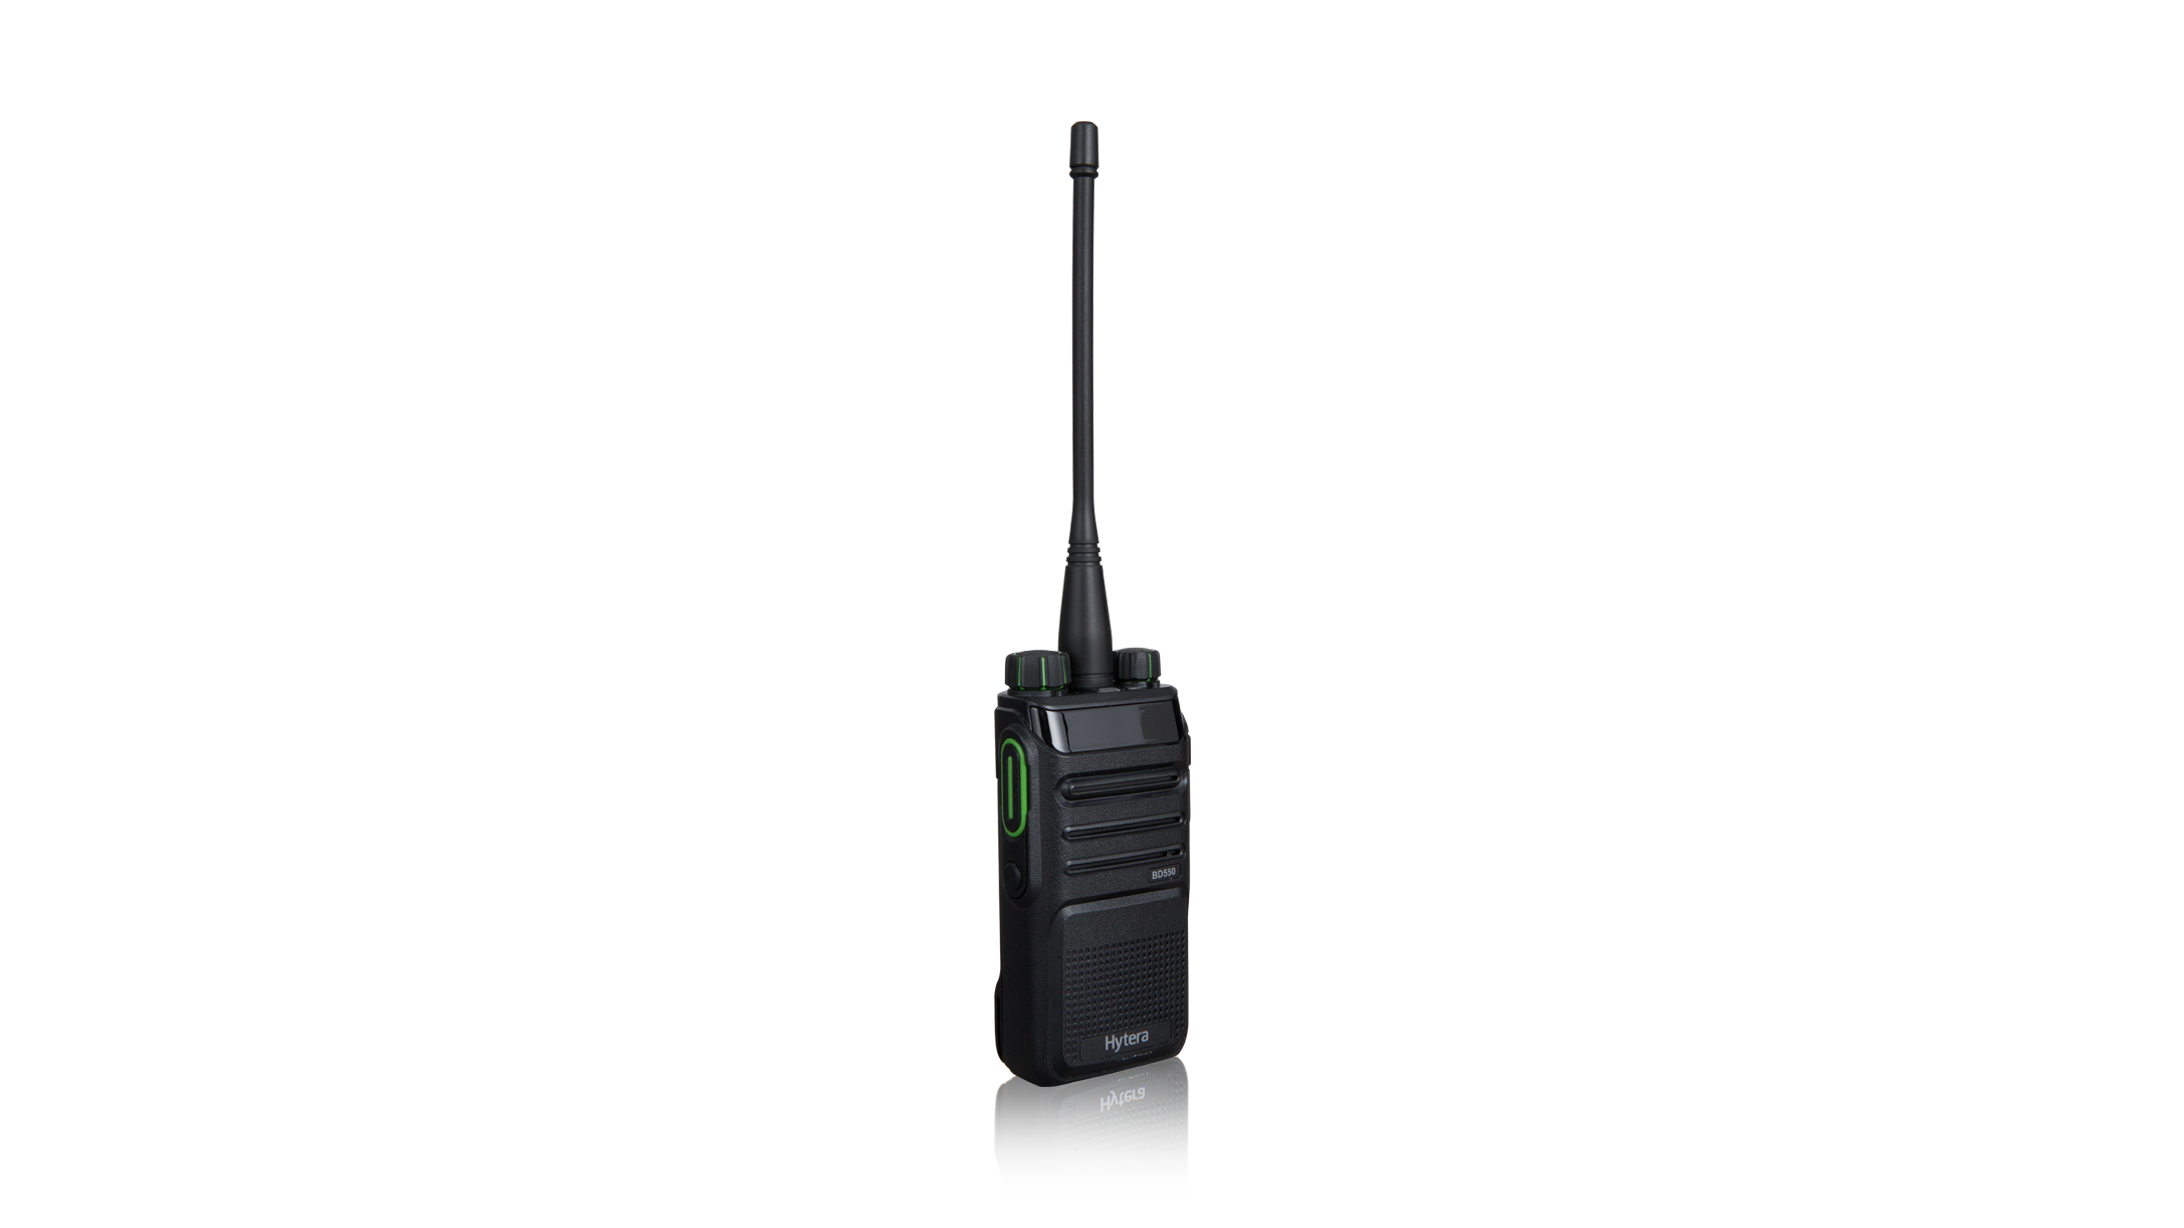 BD555 Коммерческая цифровая радиостанция DMR